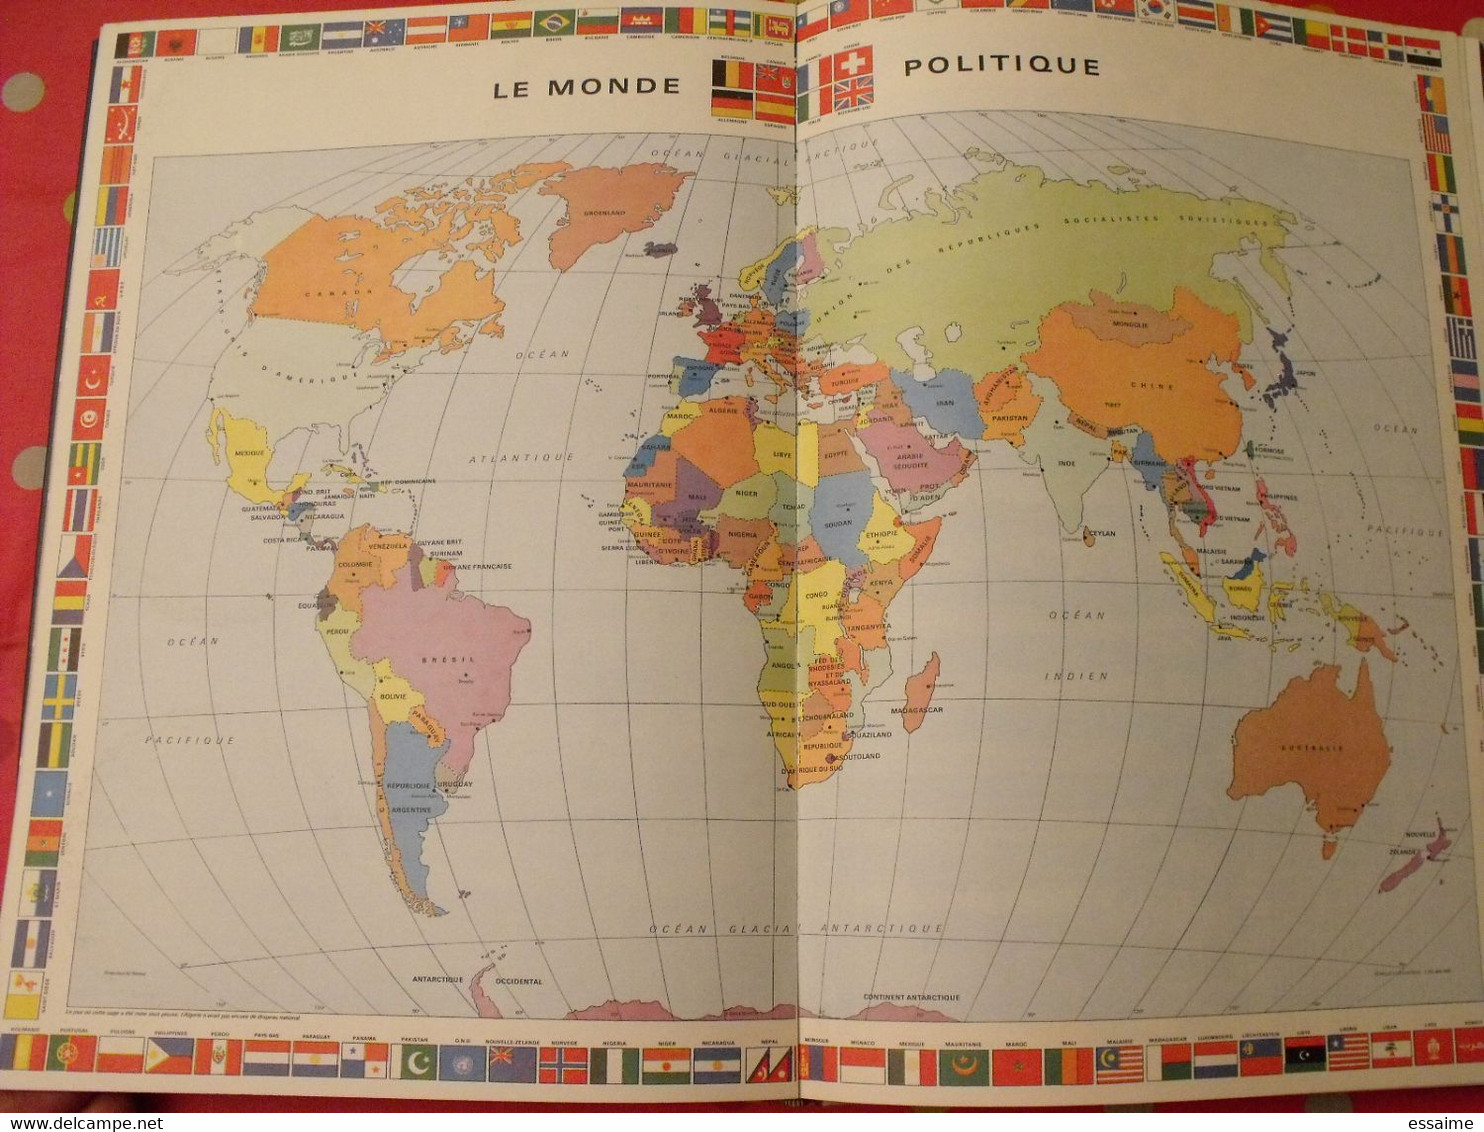 grand atlas mondial. très illustré et grand format. 1962